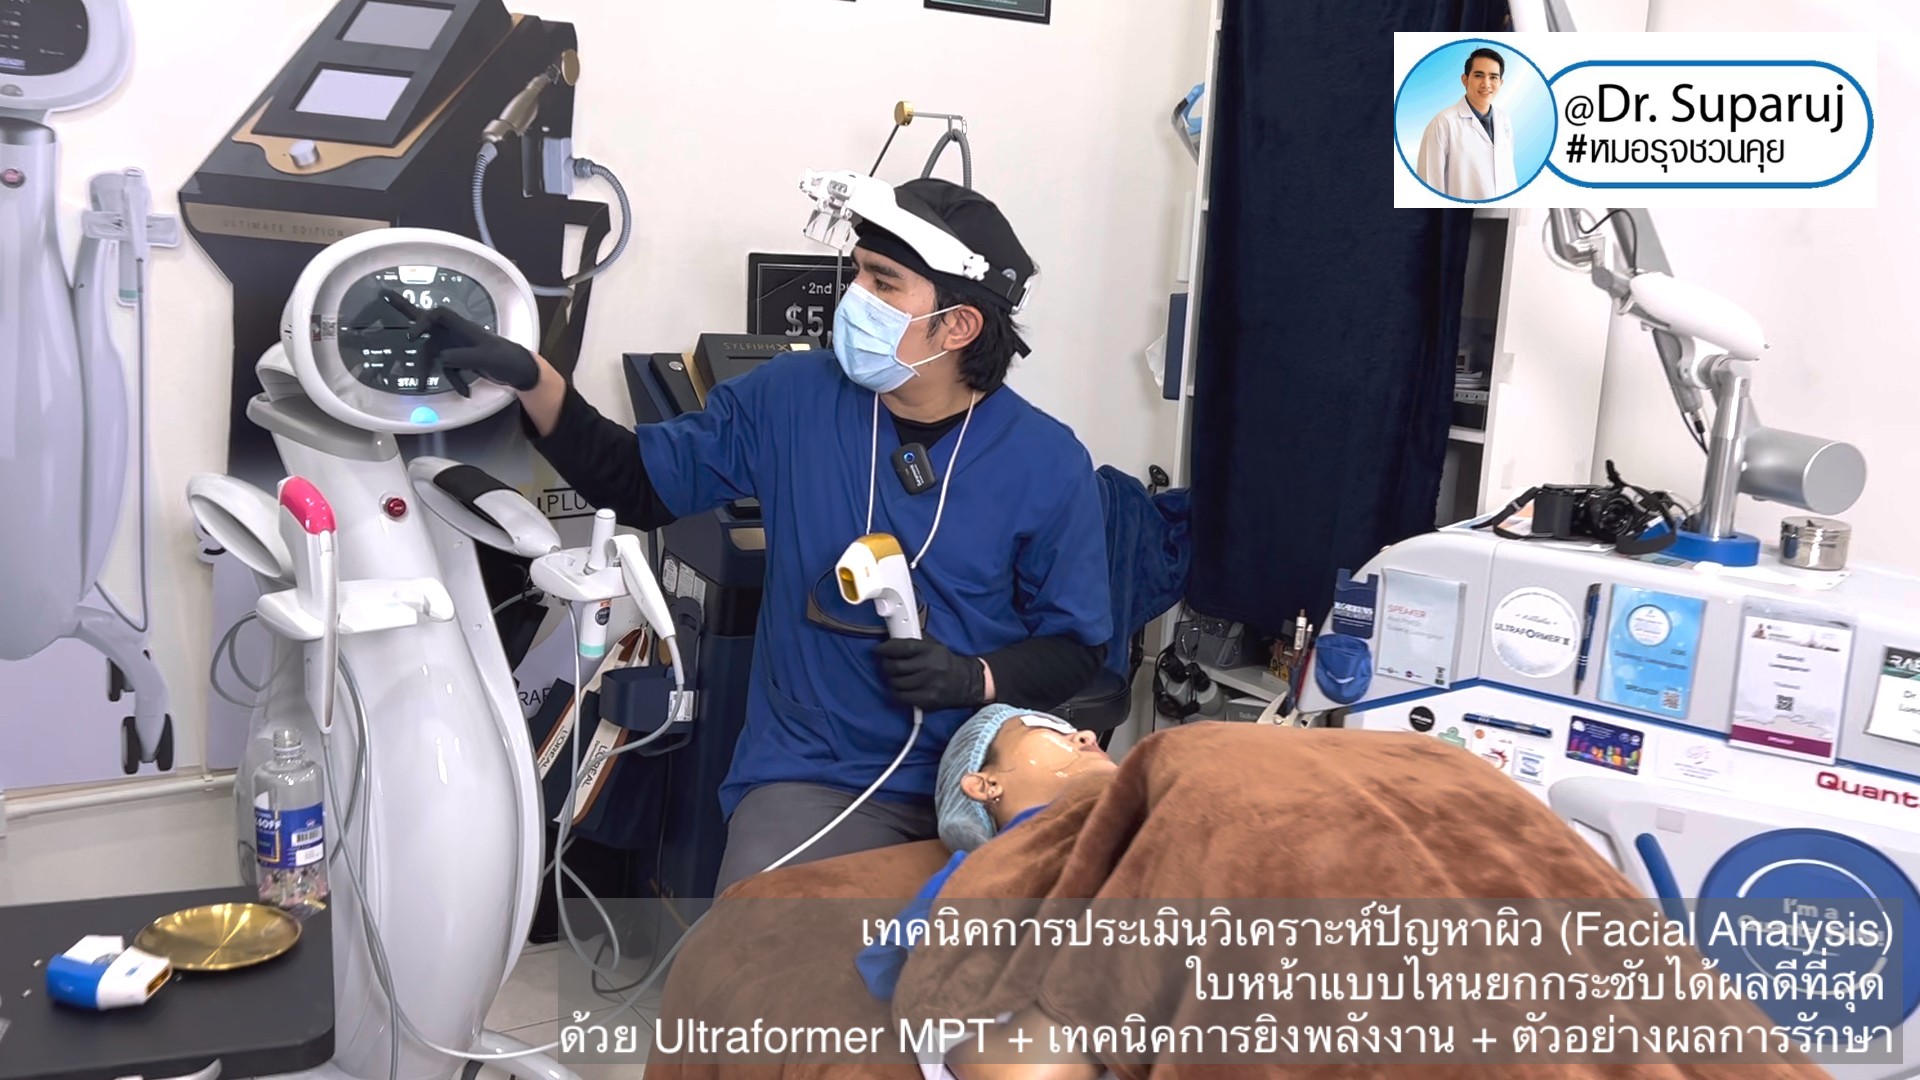 เทคนิคการประเมินวิเคราะห์ปัญหาผิว (Facial Analysis) ใบหน้าแบบไหนยกกระชับได้ผลดีที่สุด ด้วย Ultraformer MPT + เทคนิคการยิงพลังงาน + ตัวอย่างผลการรักษา